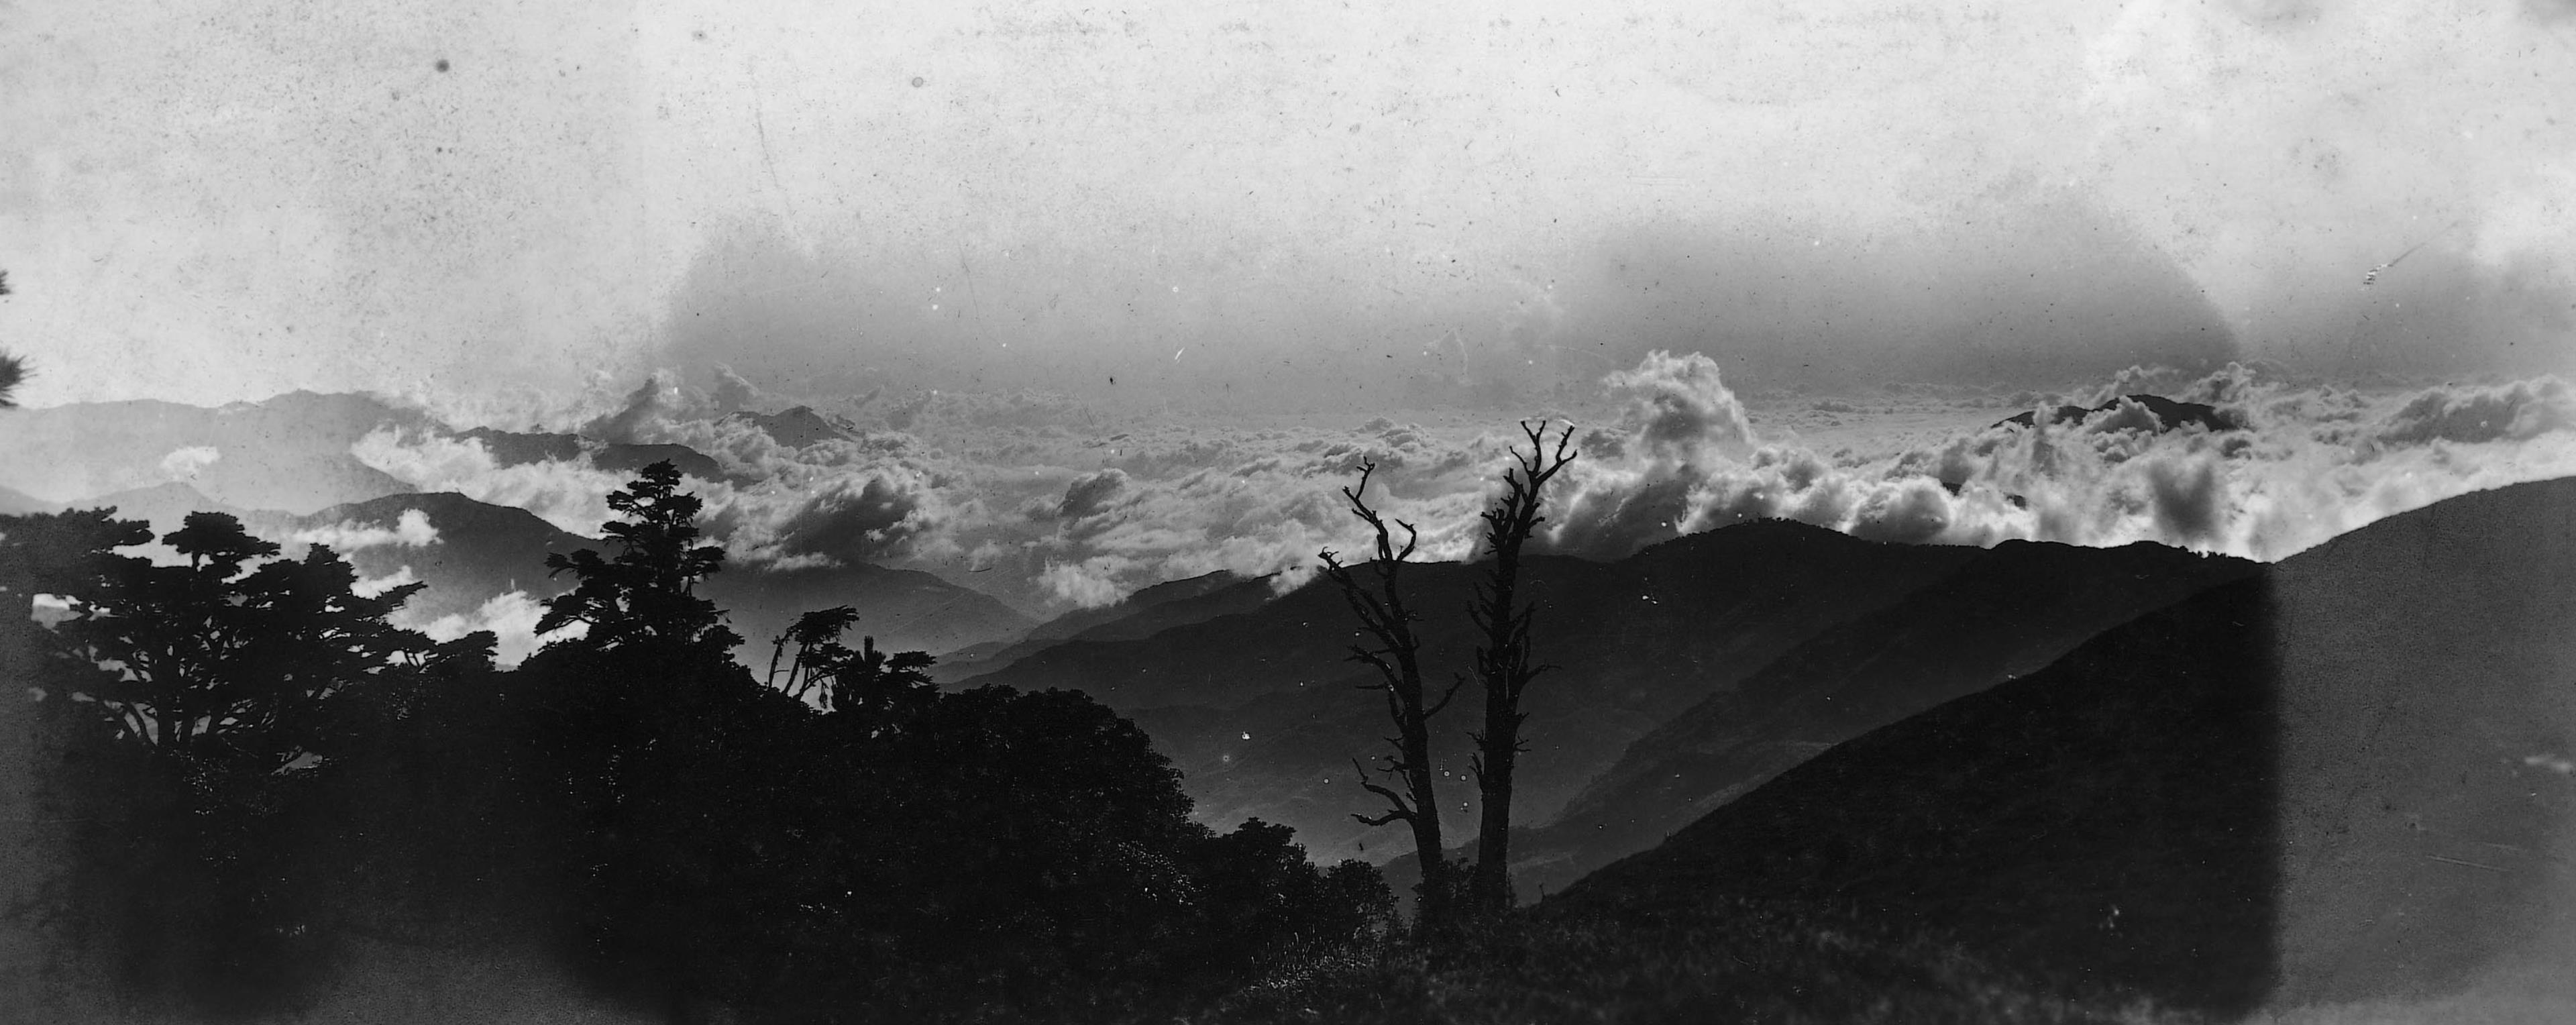 自中央山脈所見的臺中州方向的雲海 (共2張)